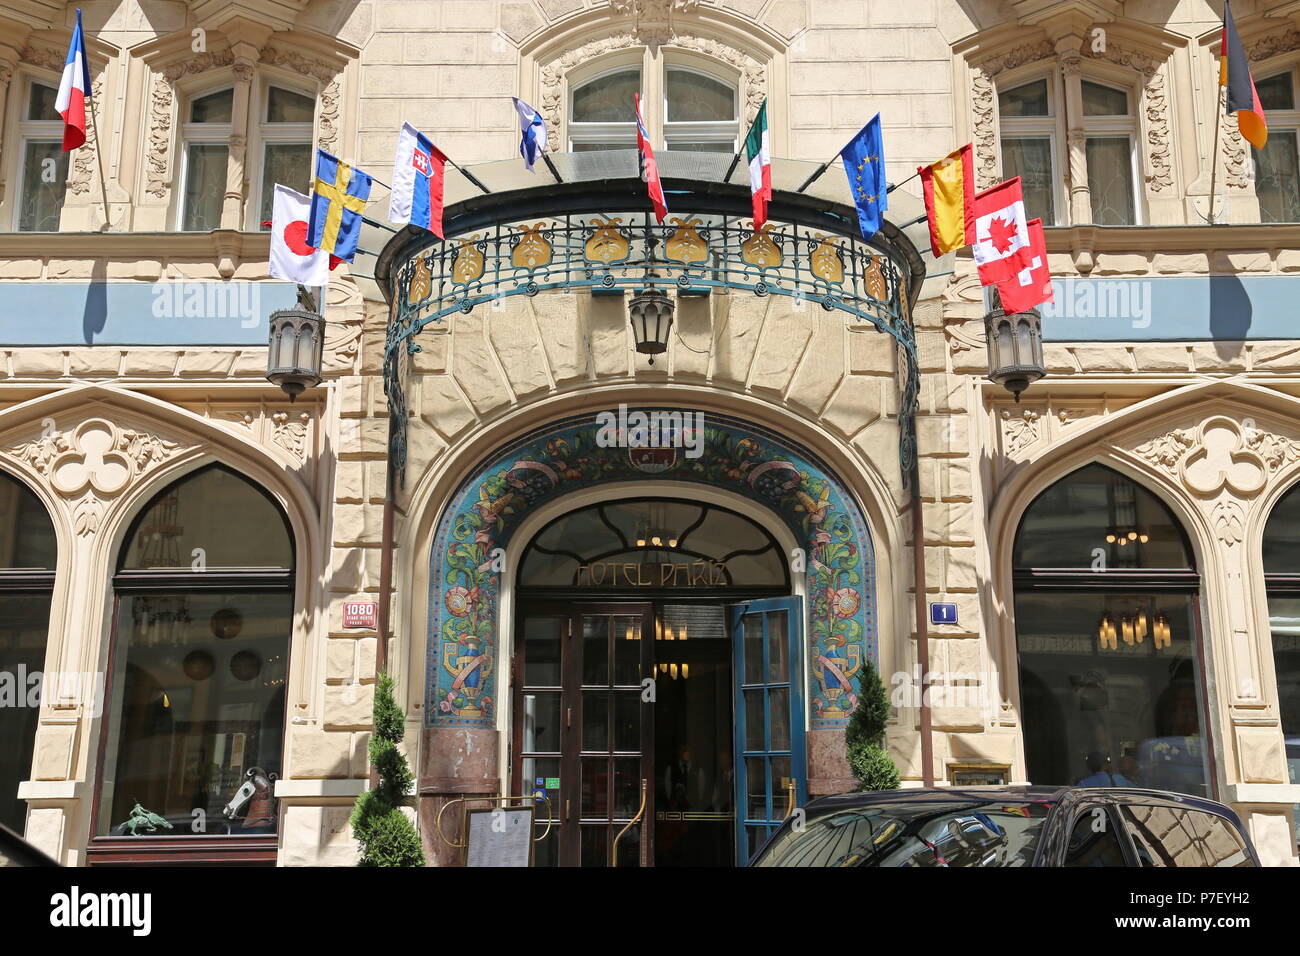 Hotel Paříž, U Obecního Domu, Staré Město (Old Town), Prague, Czechia (Czech  Republic), Europe Stock Photo - Alamy